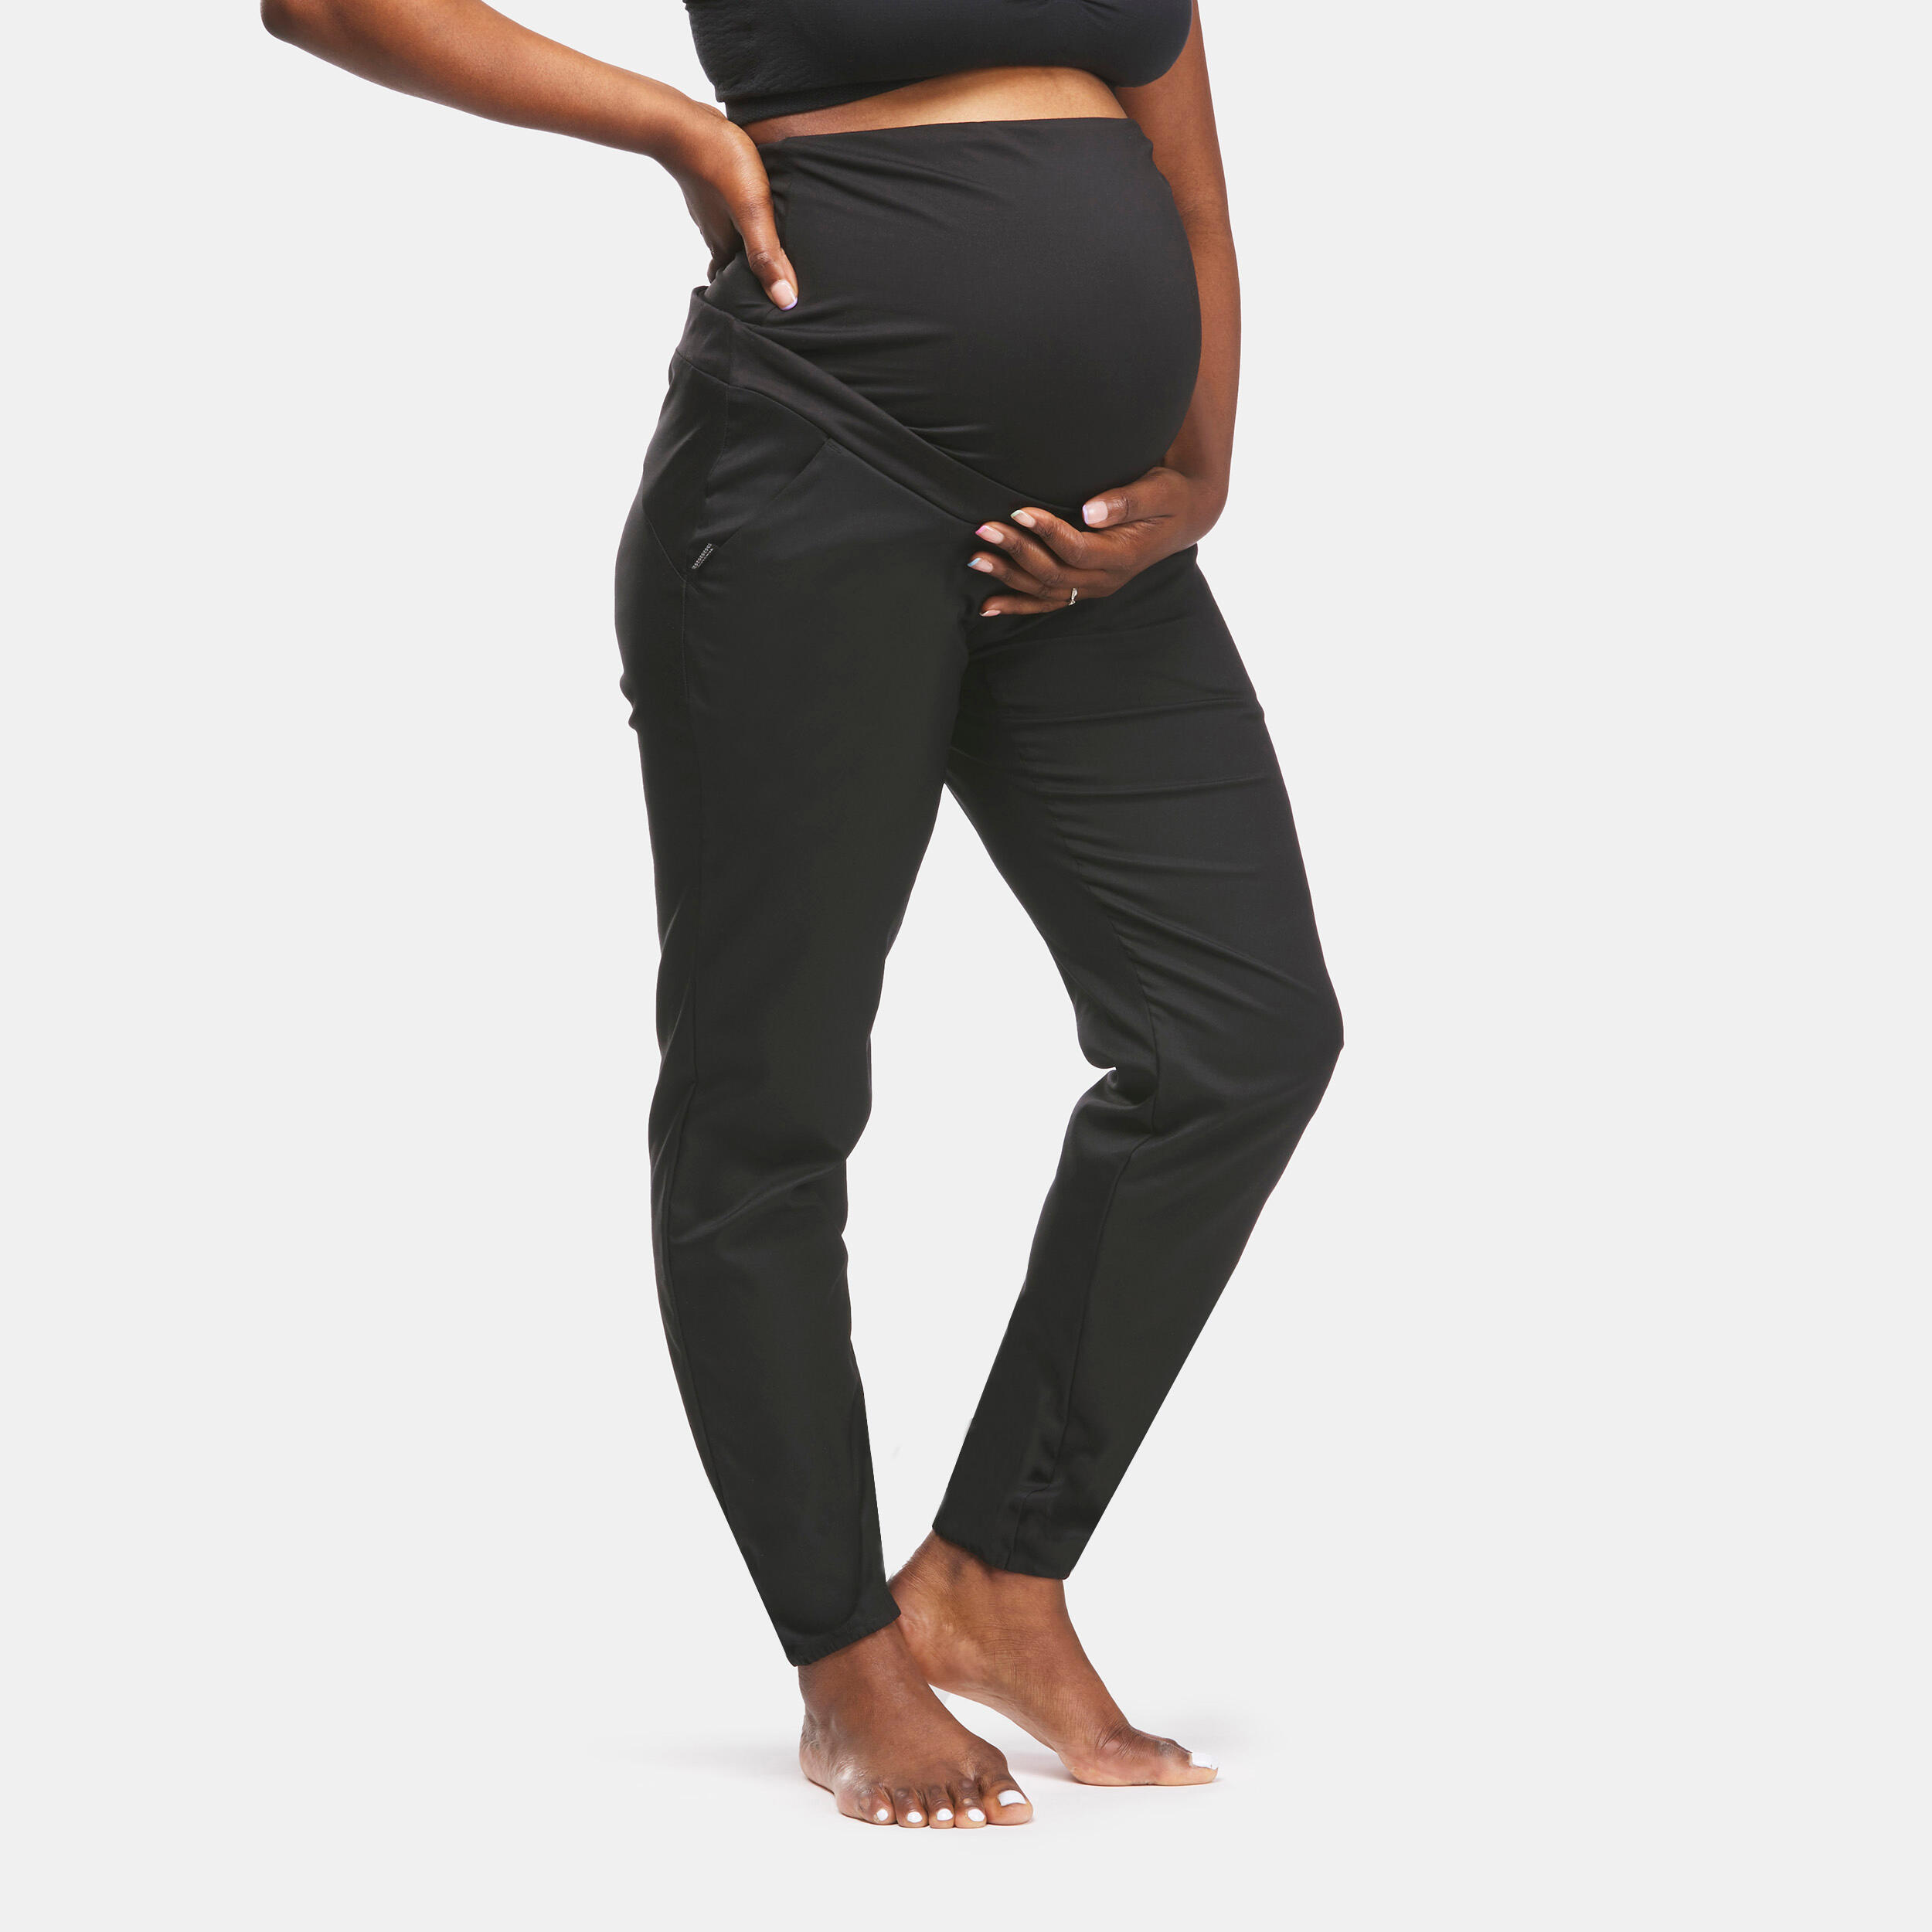 Pantalon Drumeție în natură Femei însărcinate La Oferta Online decathlon imagine La Oferta Online